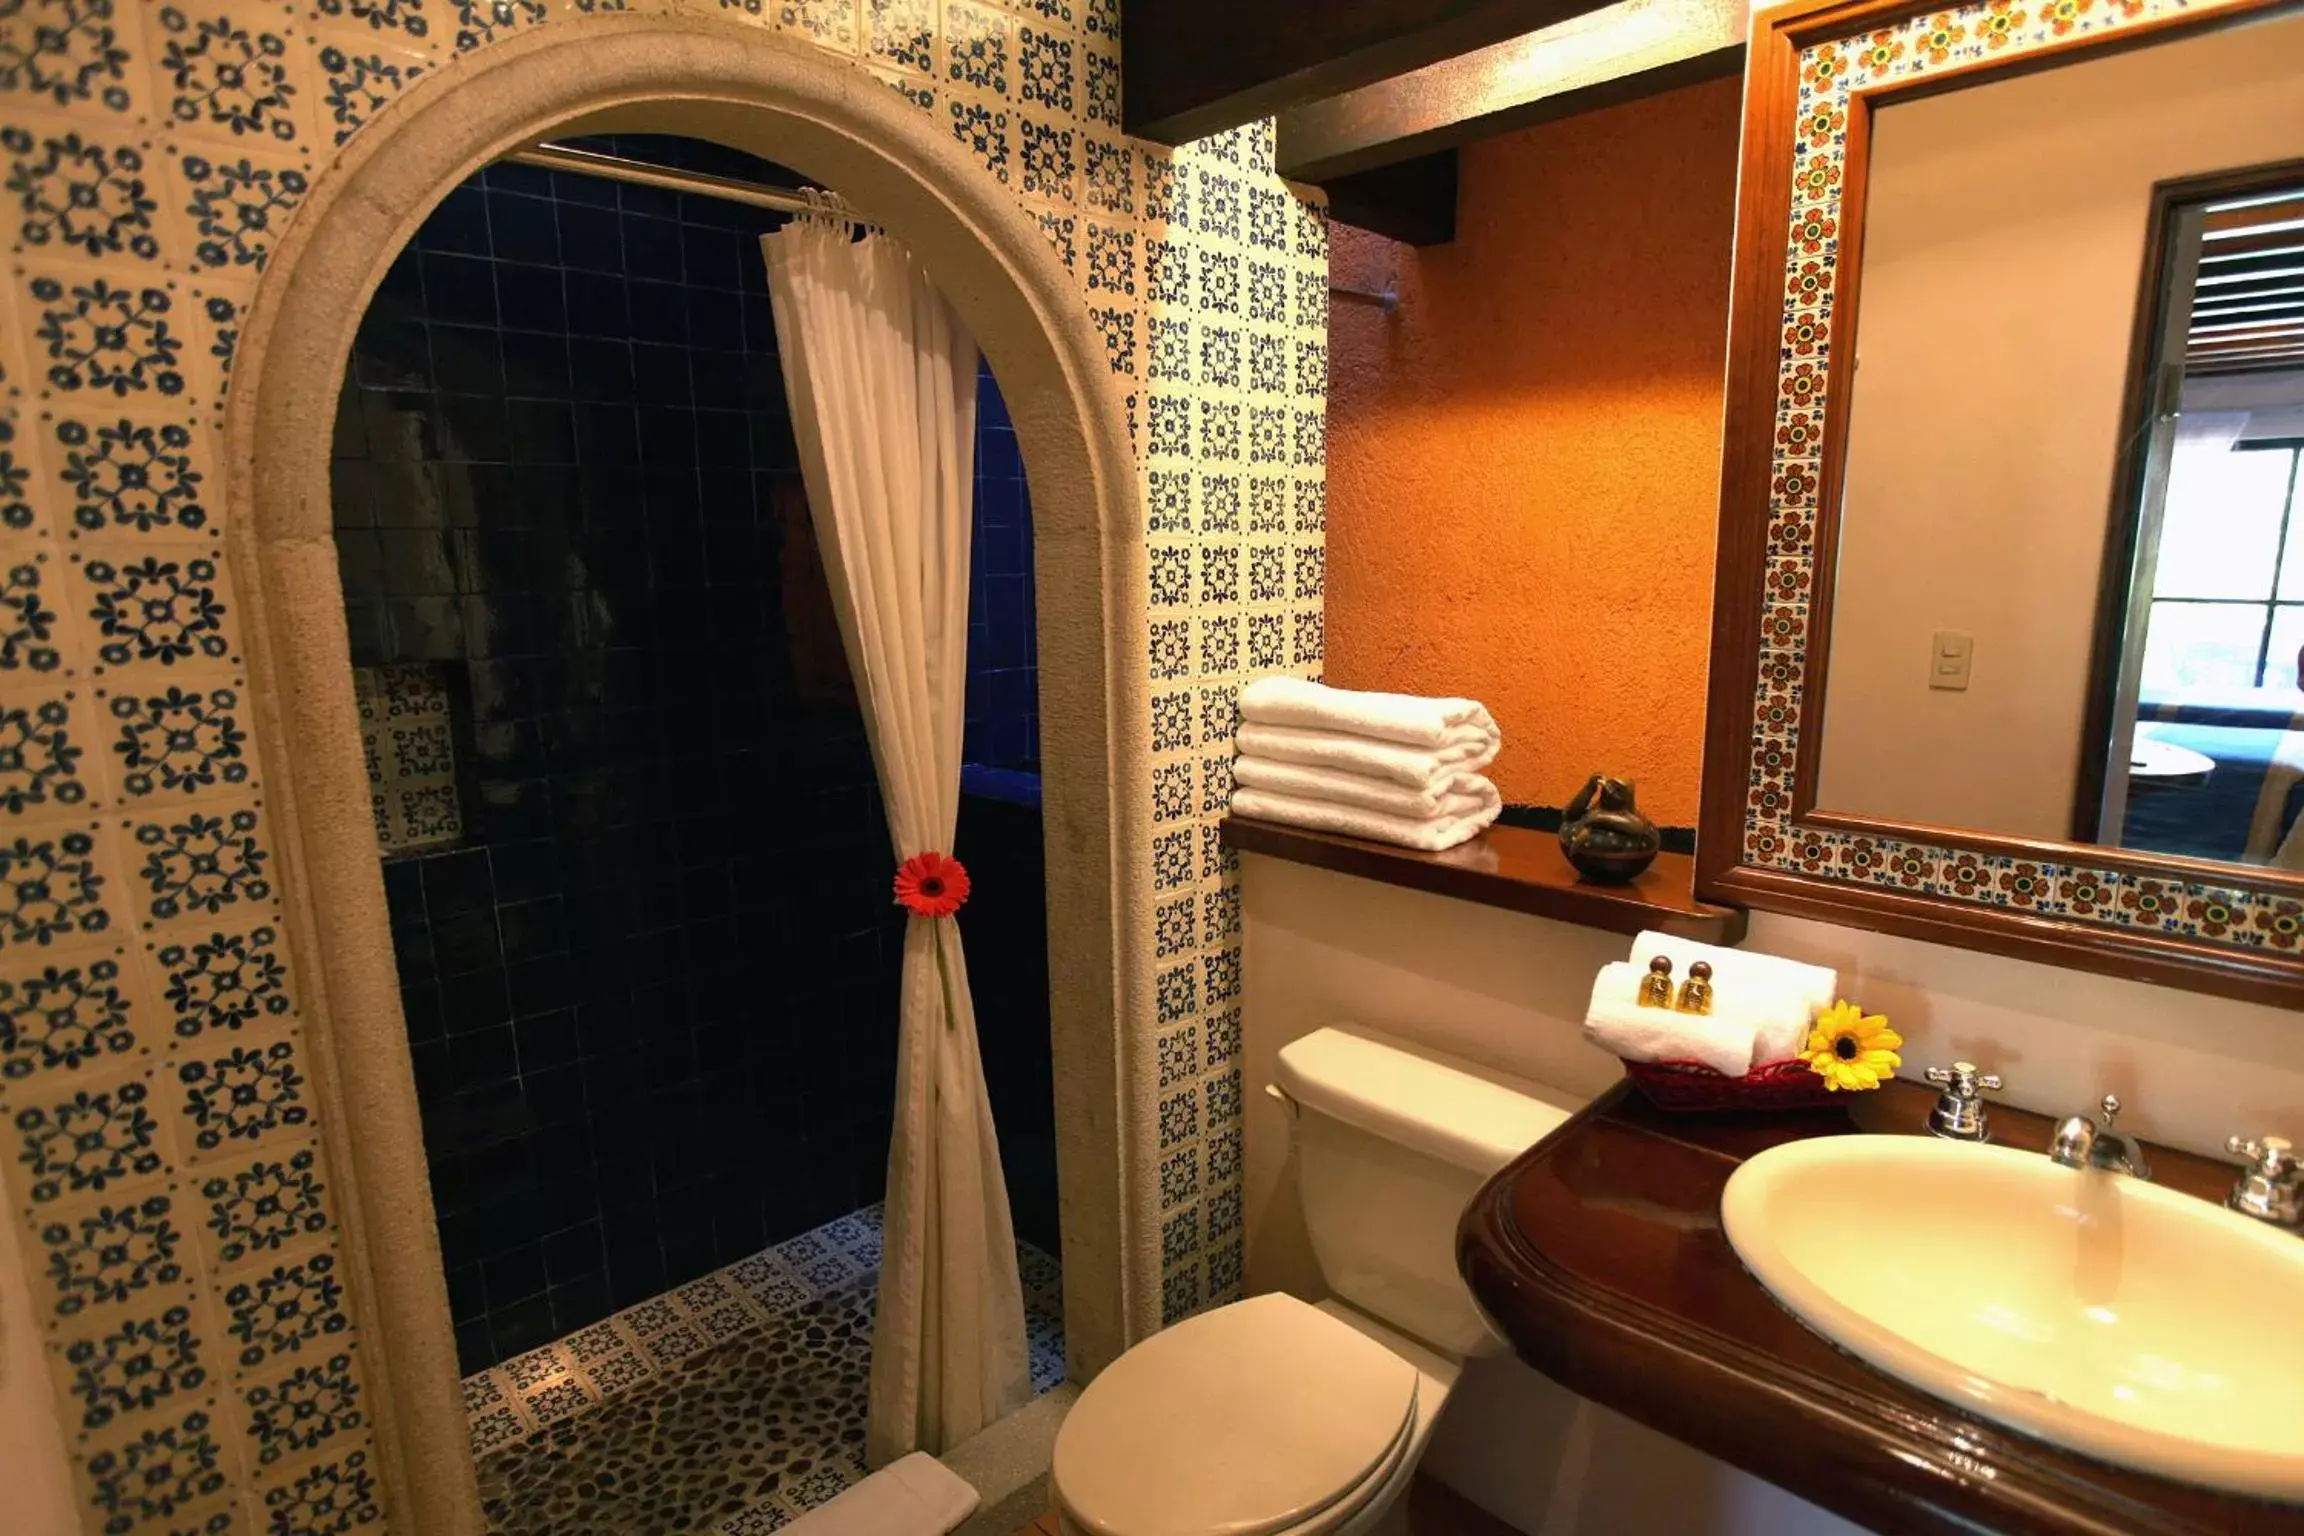 Bathroom in Hotel Lunata - 5th Avenue